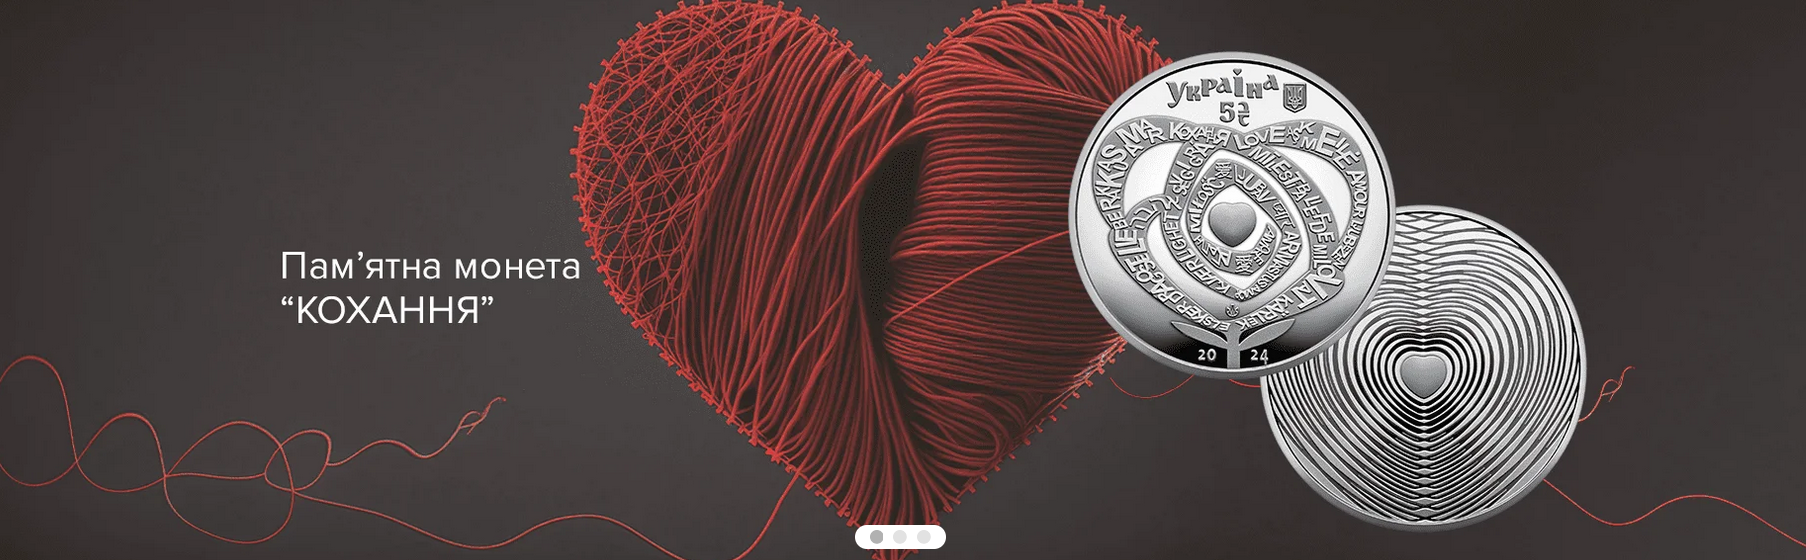 Національний банк запустив в обіг пам'ятну монету "Кохання"